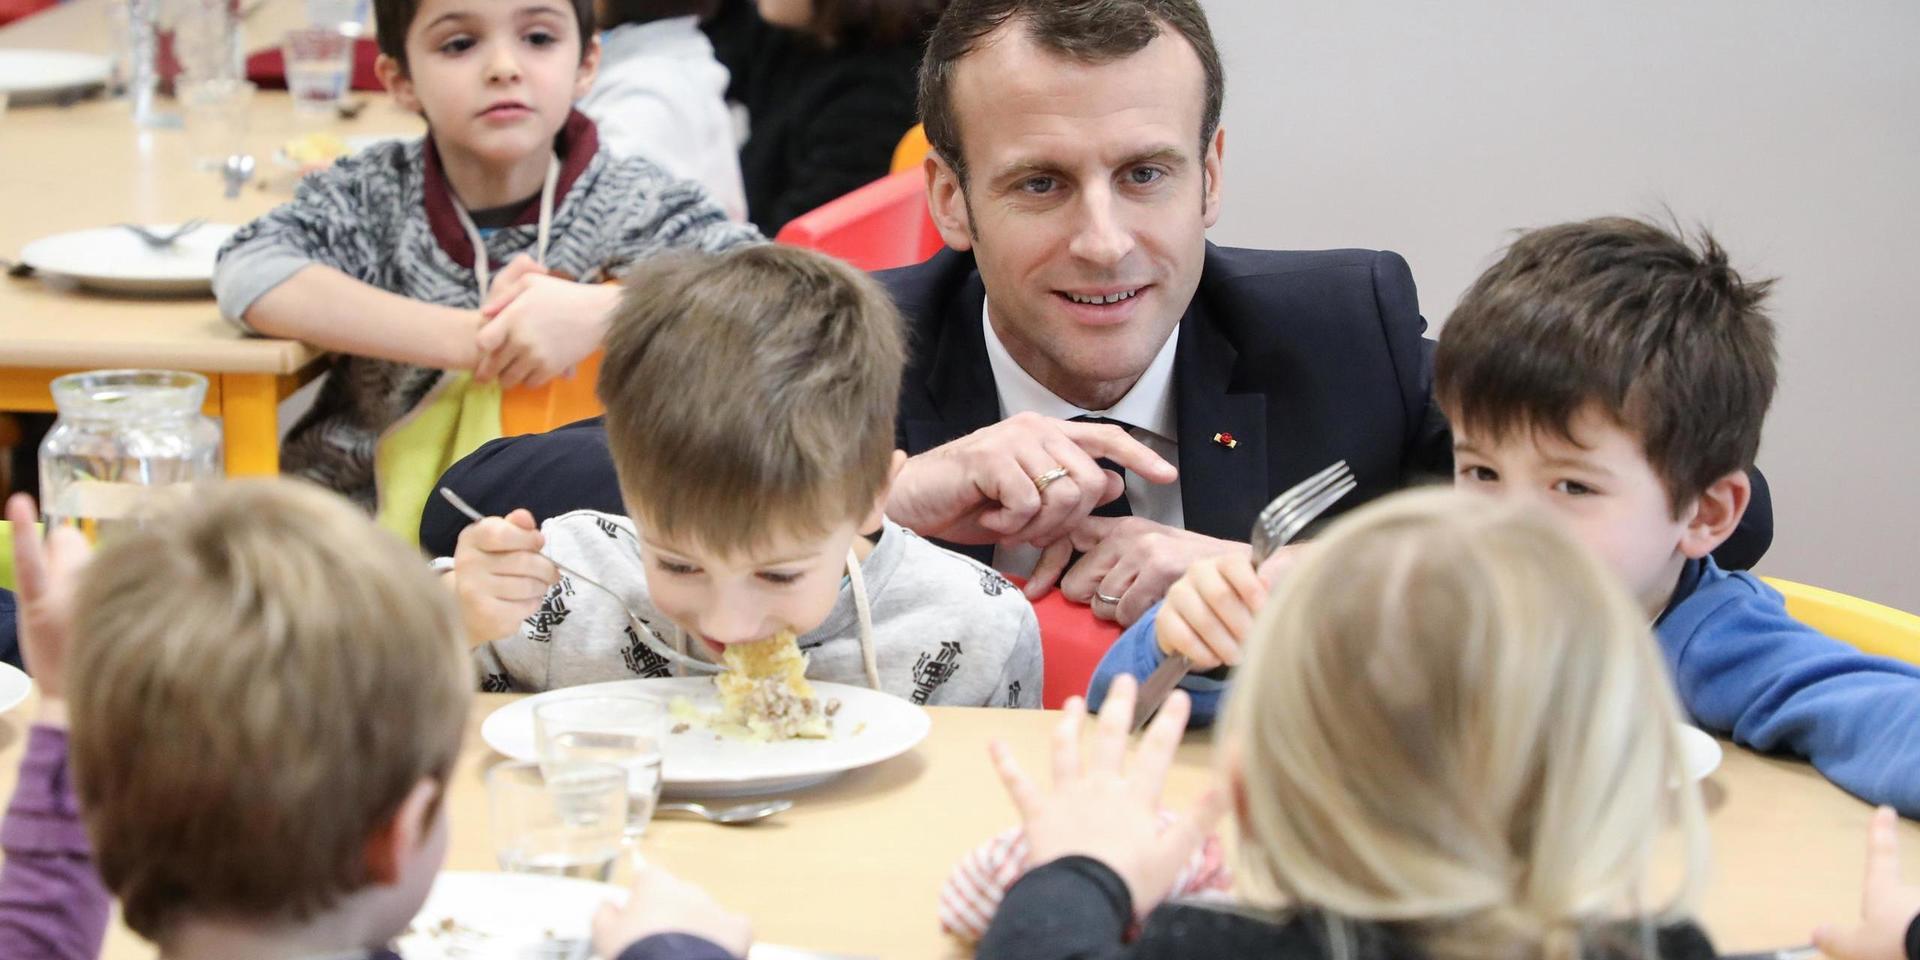 Frankrikes president Emmanuel Macron på besök i en sydfransk skolmatsal 2019. Nu rasar flera av hans ministrar sedan Lyon slutat servera kött till skolbarn under pandemin. Arkivbild.